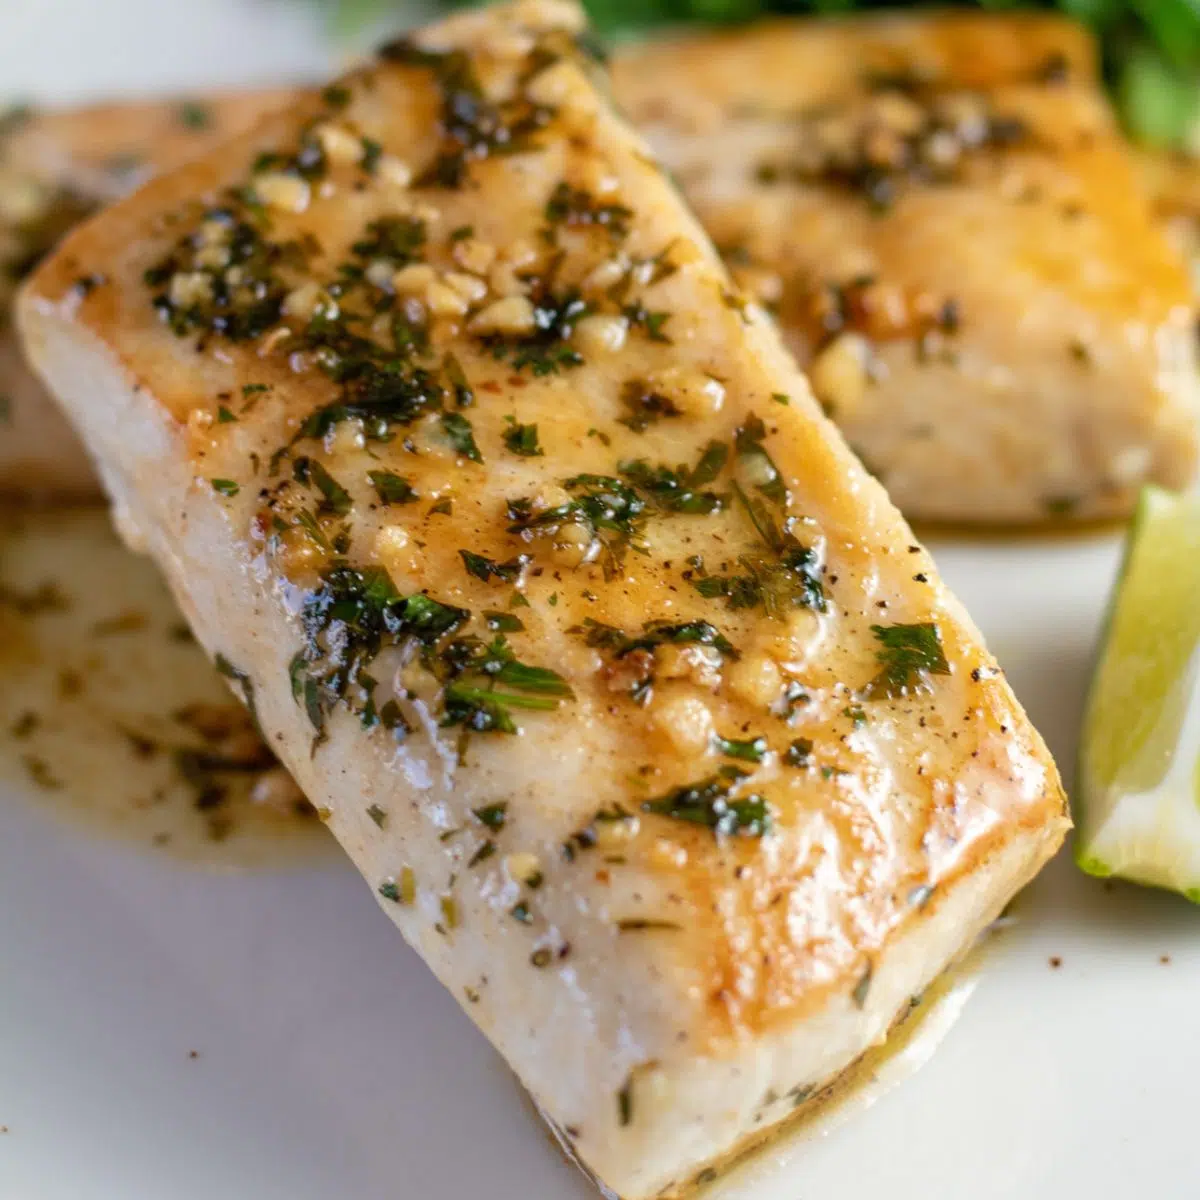 माही माही मछली क्या है और इसे सफेद प्लेट पर परोसने वाले इस स्वादिष्ट व्यंजन की तरह कैसे इस्तेमाल करें।